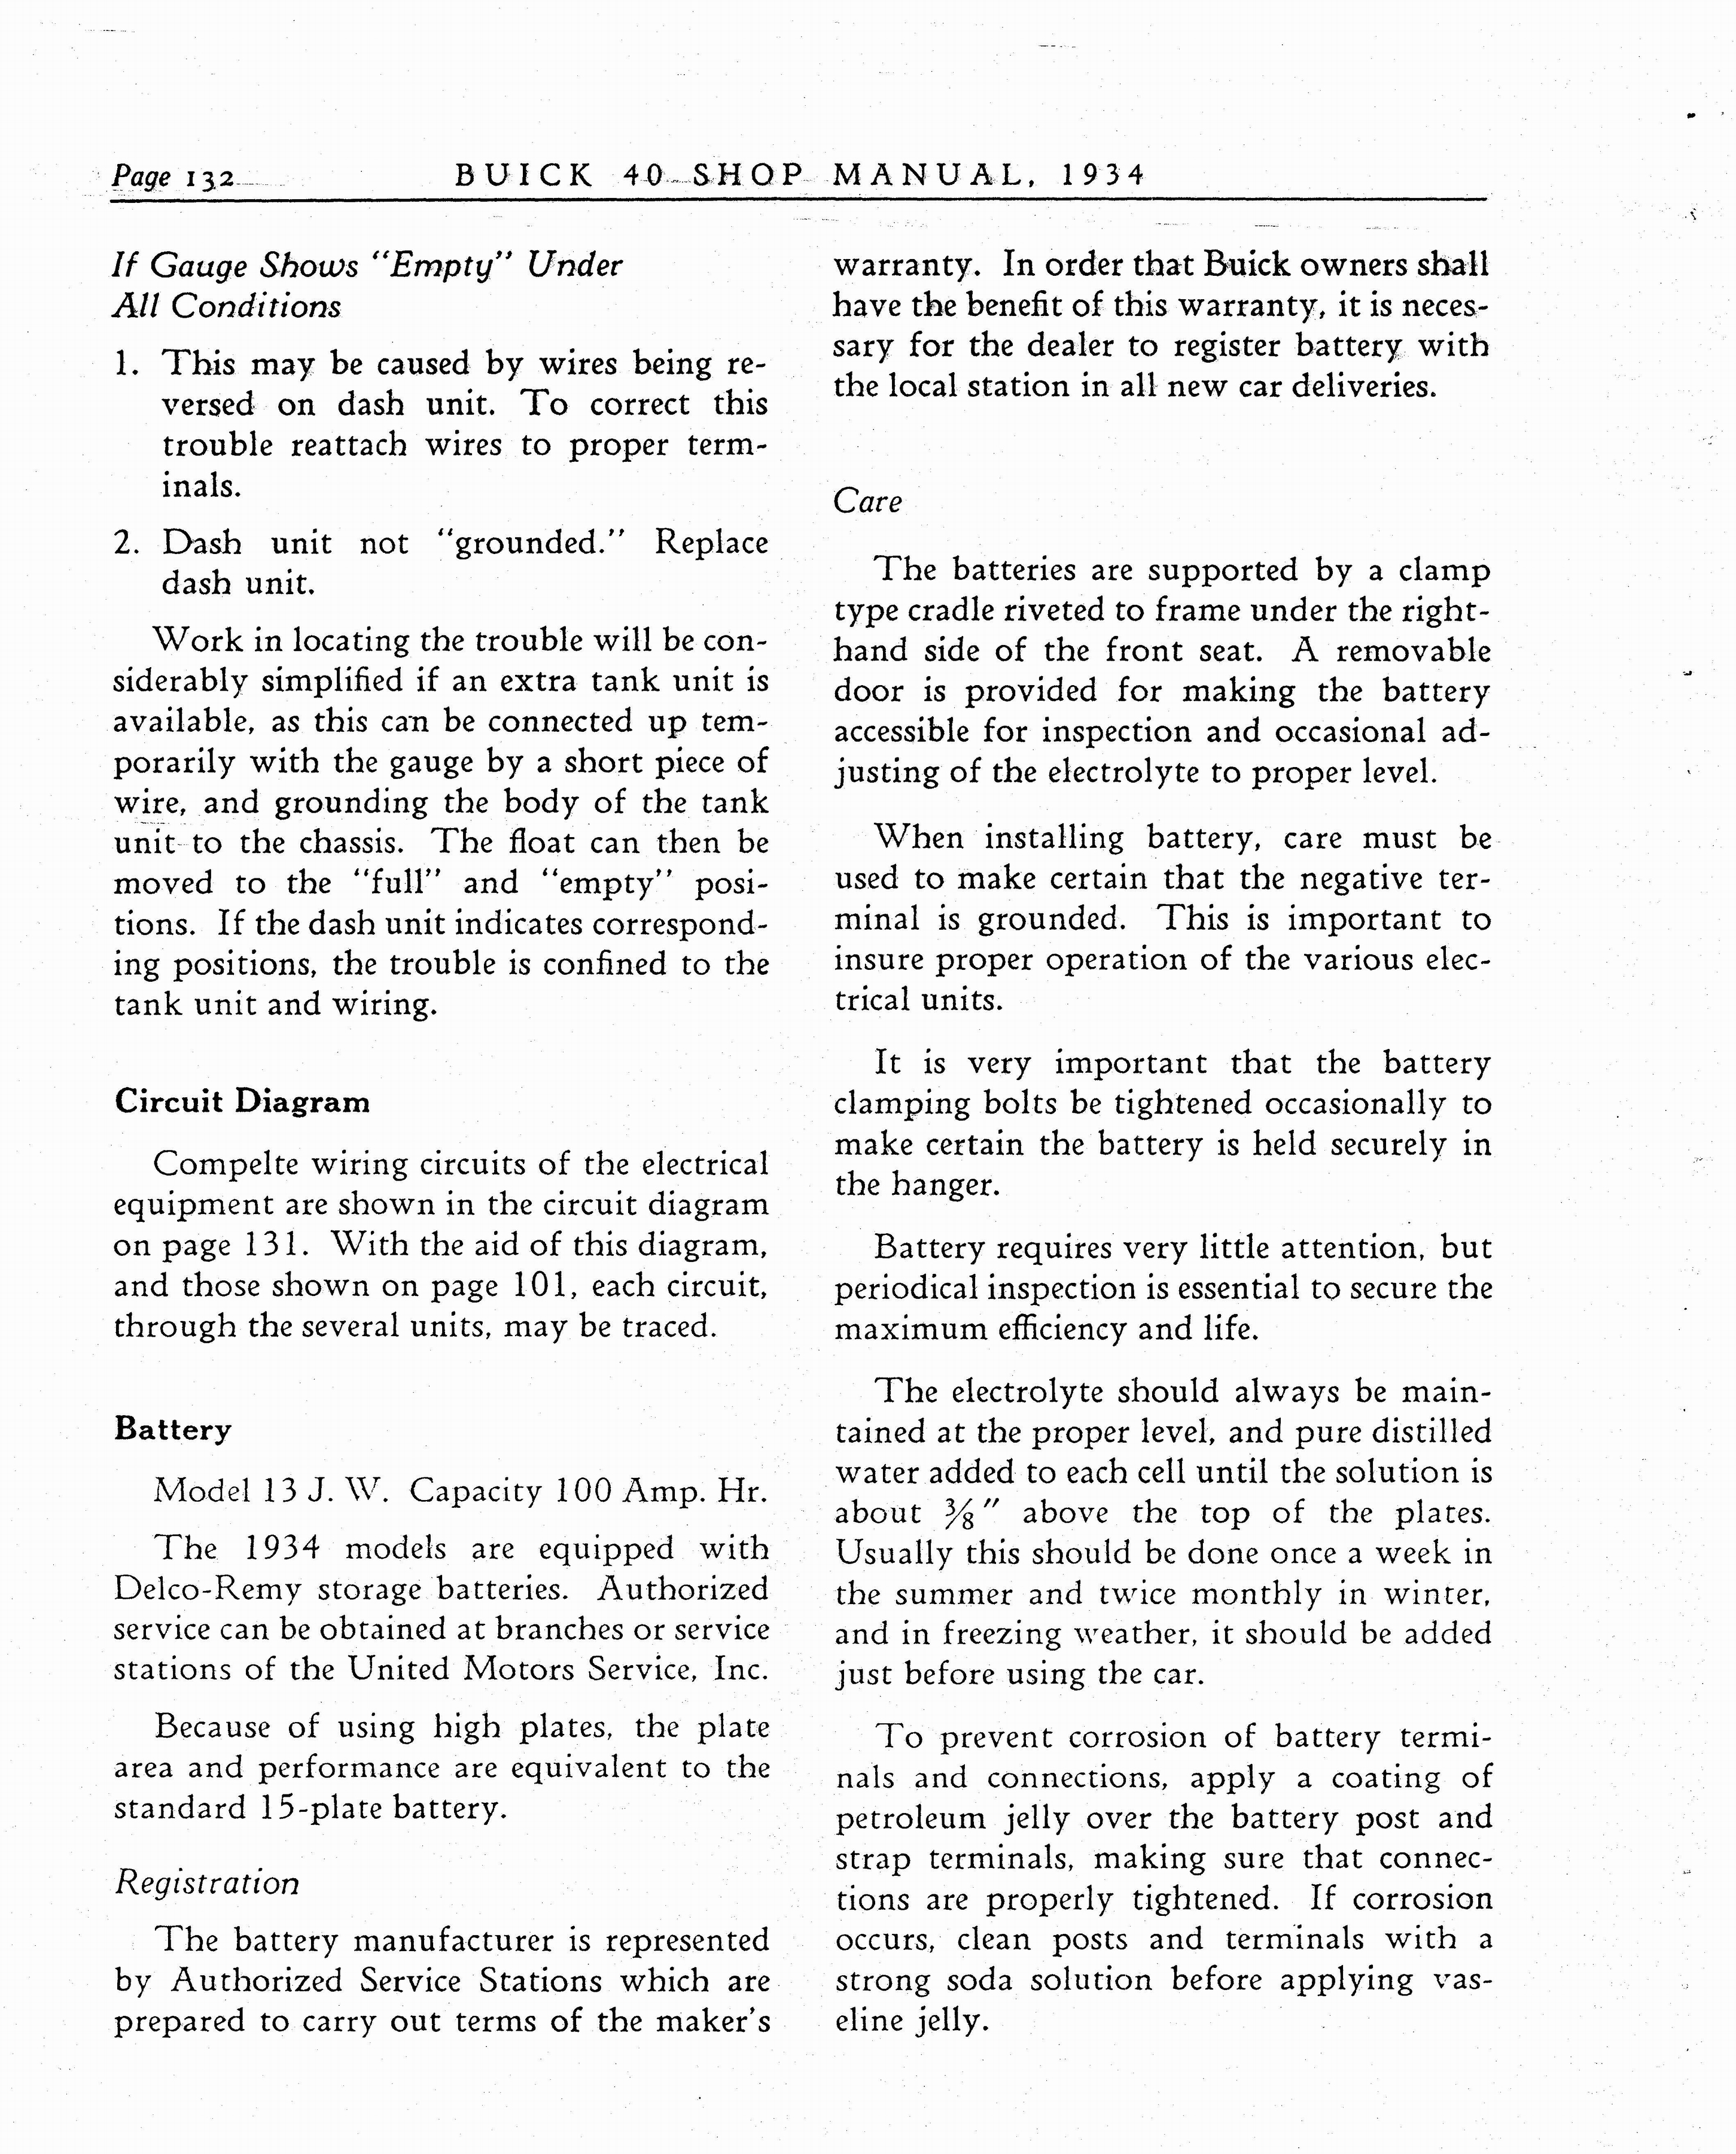 n_1934 Buick Series 40 Shop Manual_Page_133.jpg